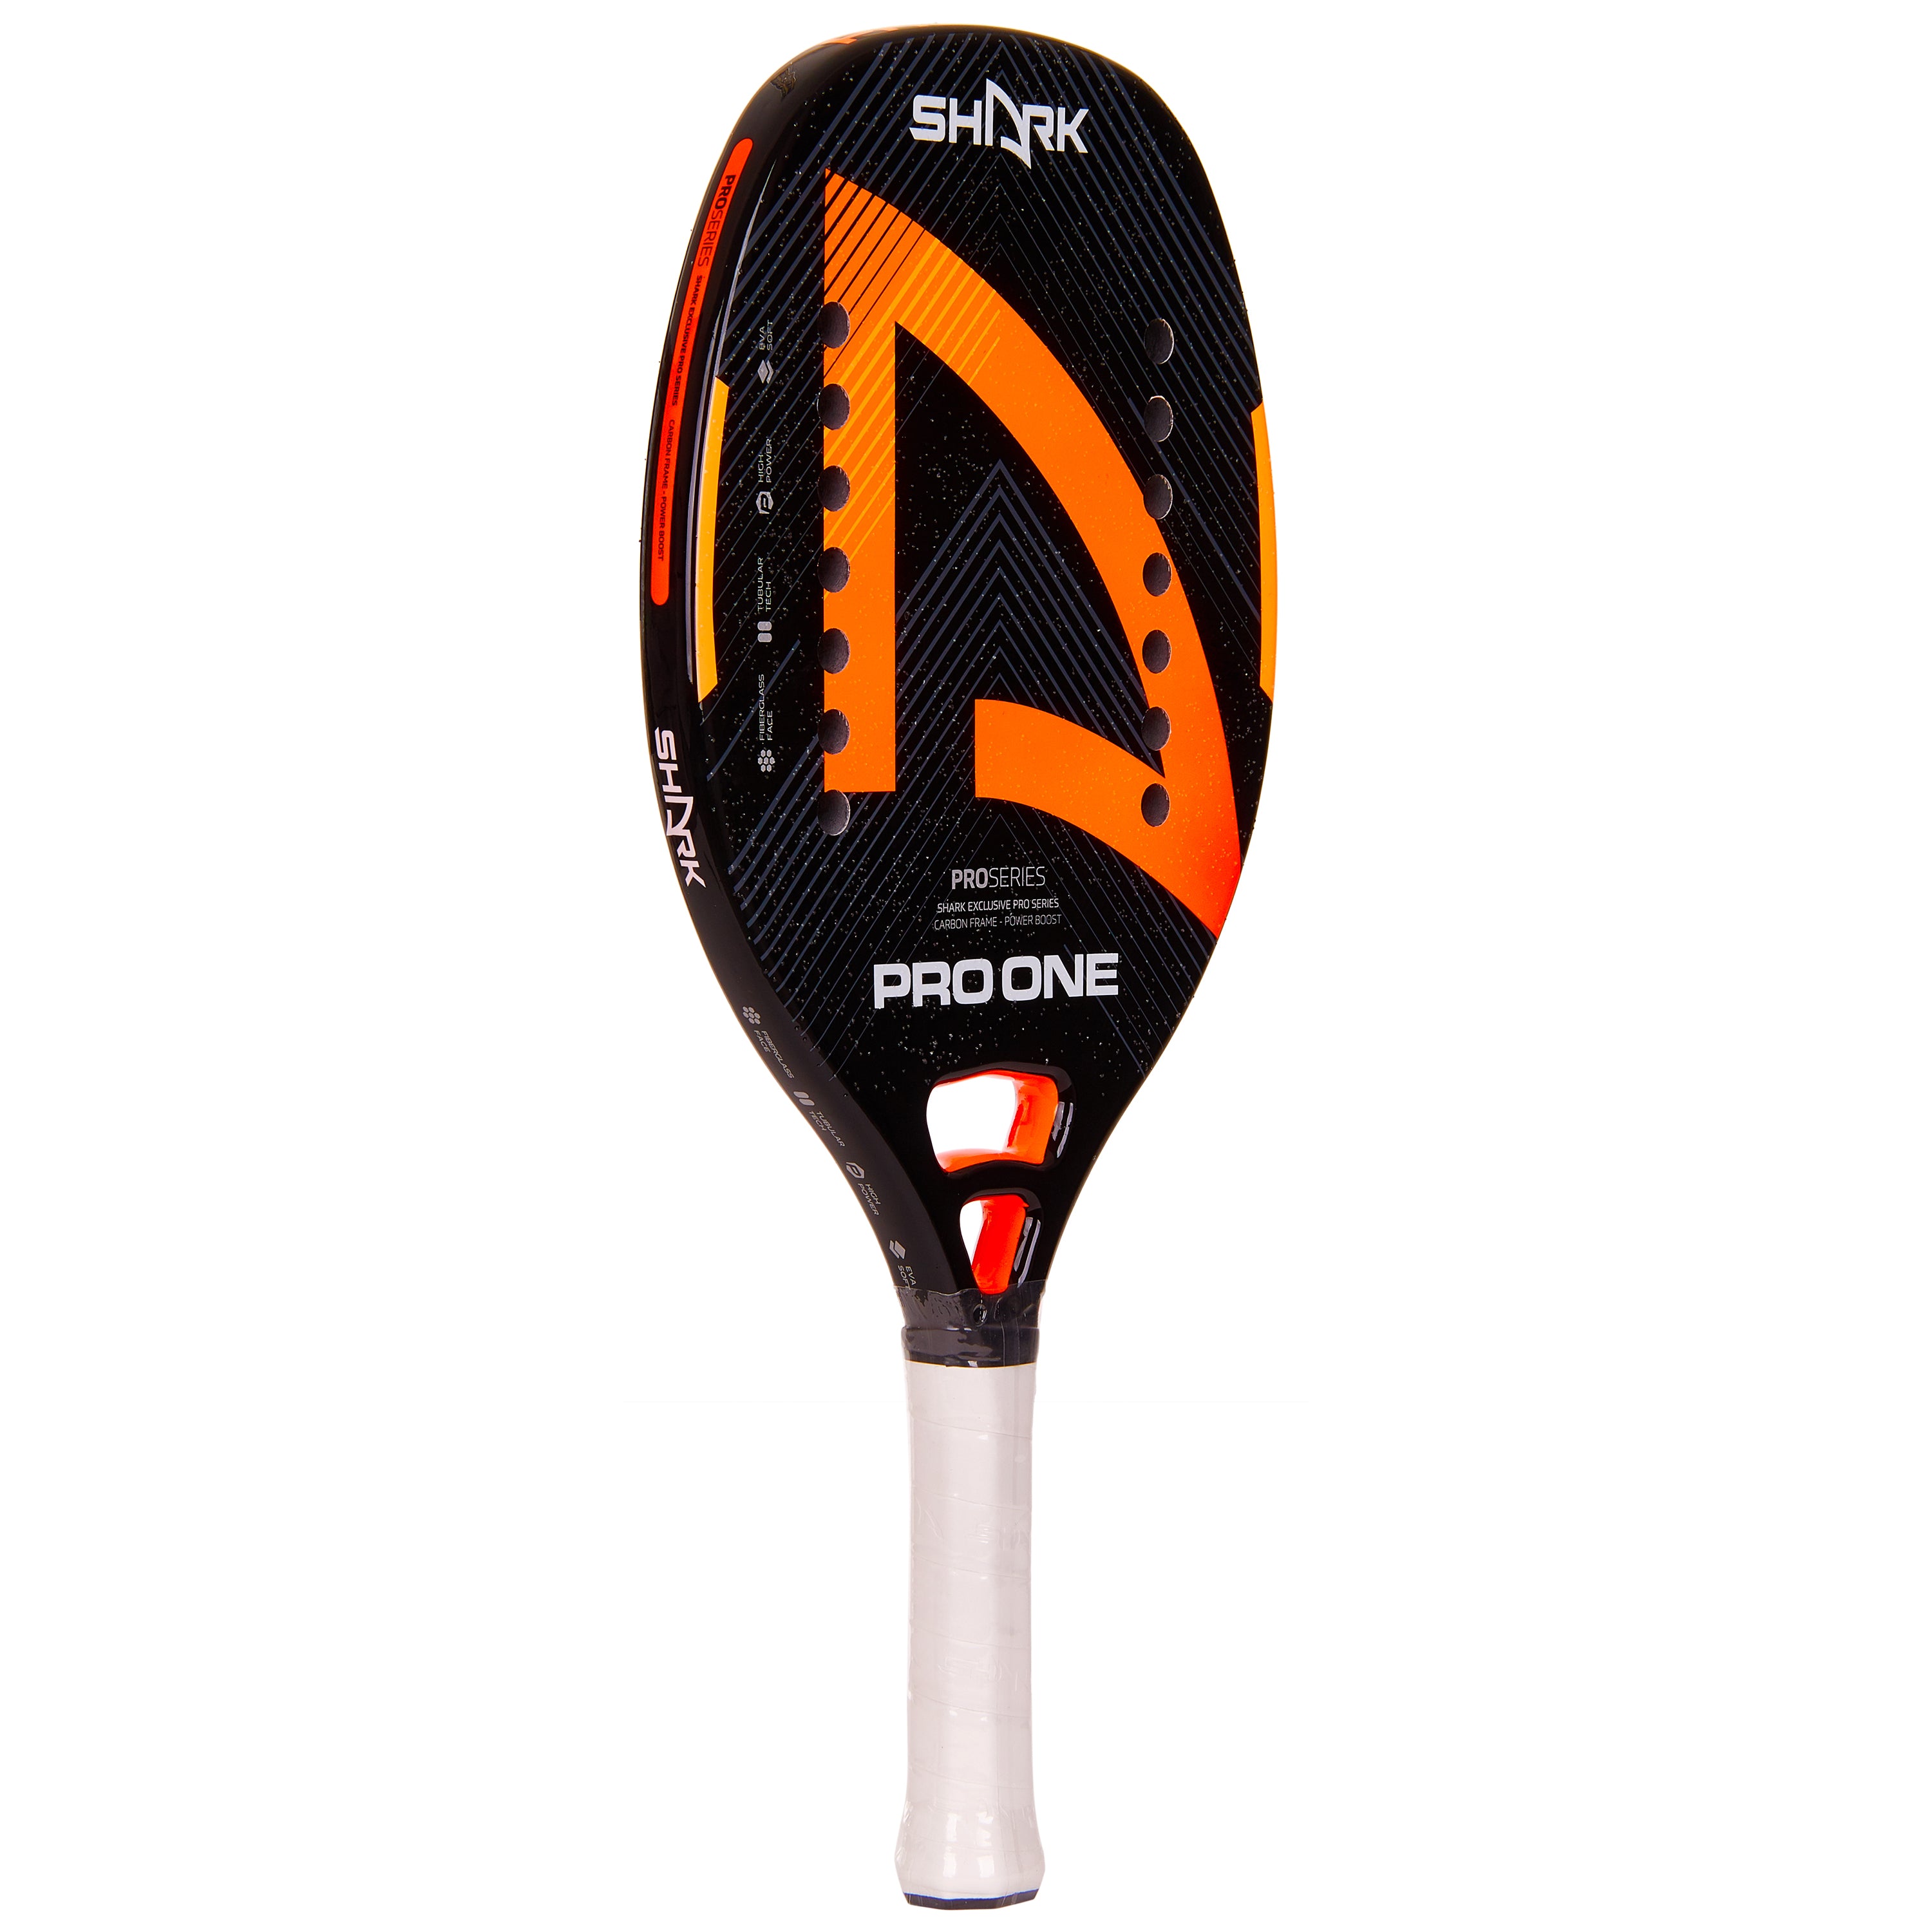 Shark Pro One Beach Tennis Racquet 2023